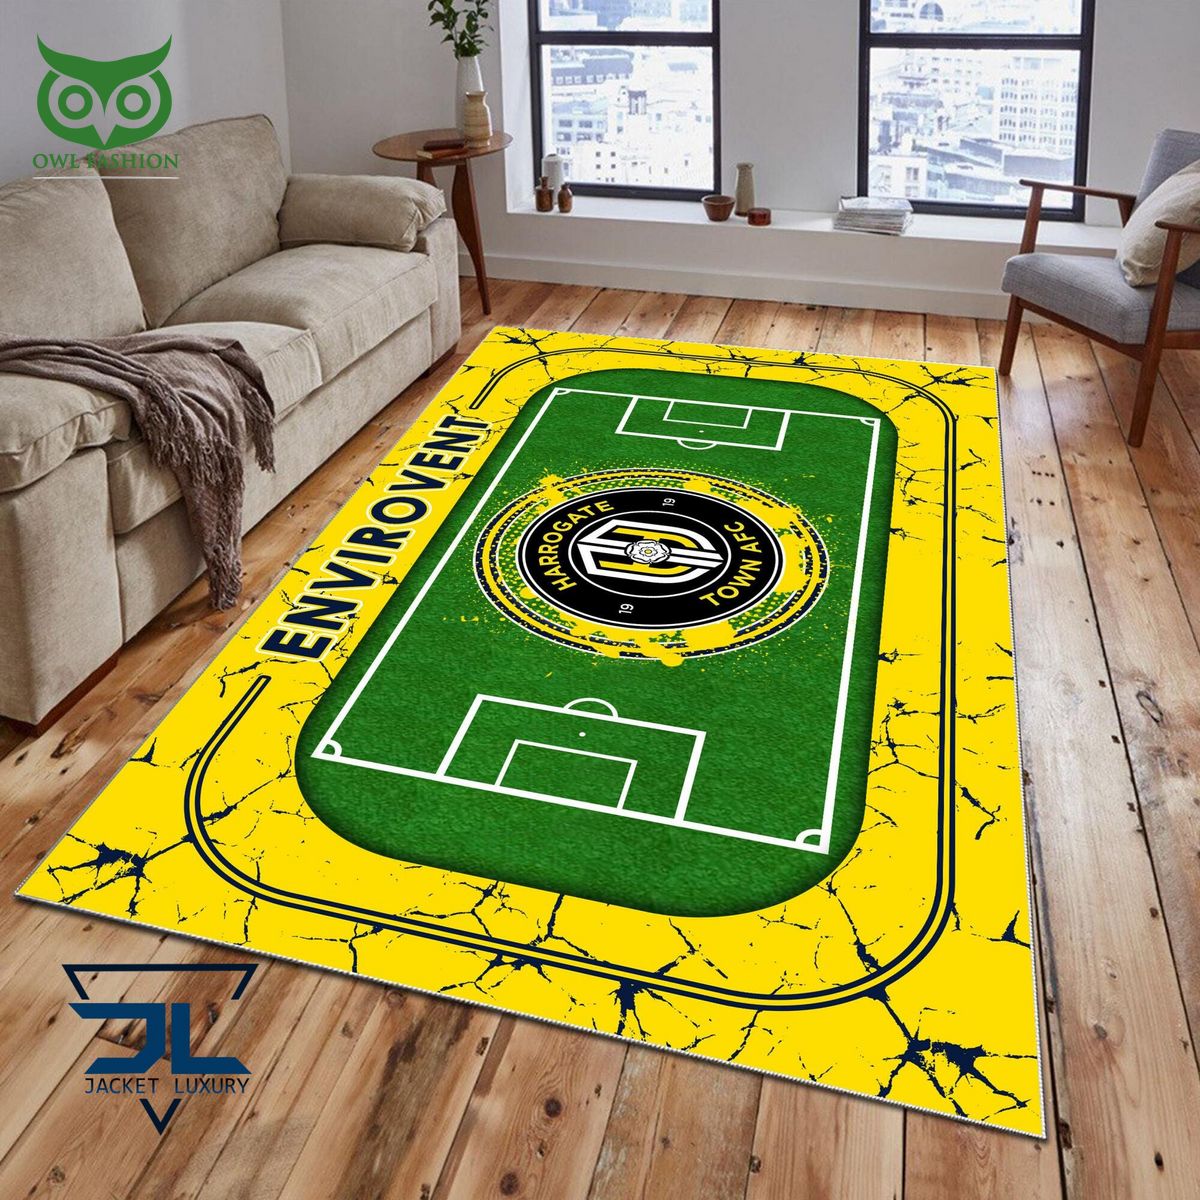 harrogate town afc english football league efl premium carpet rug 1 8QNOx